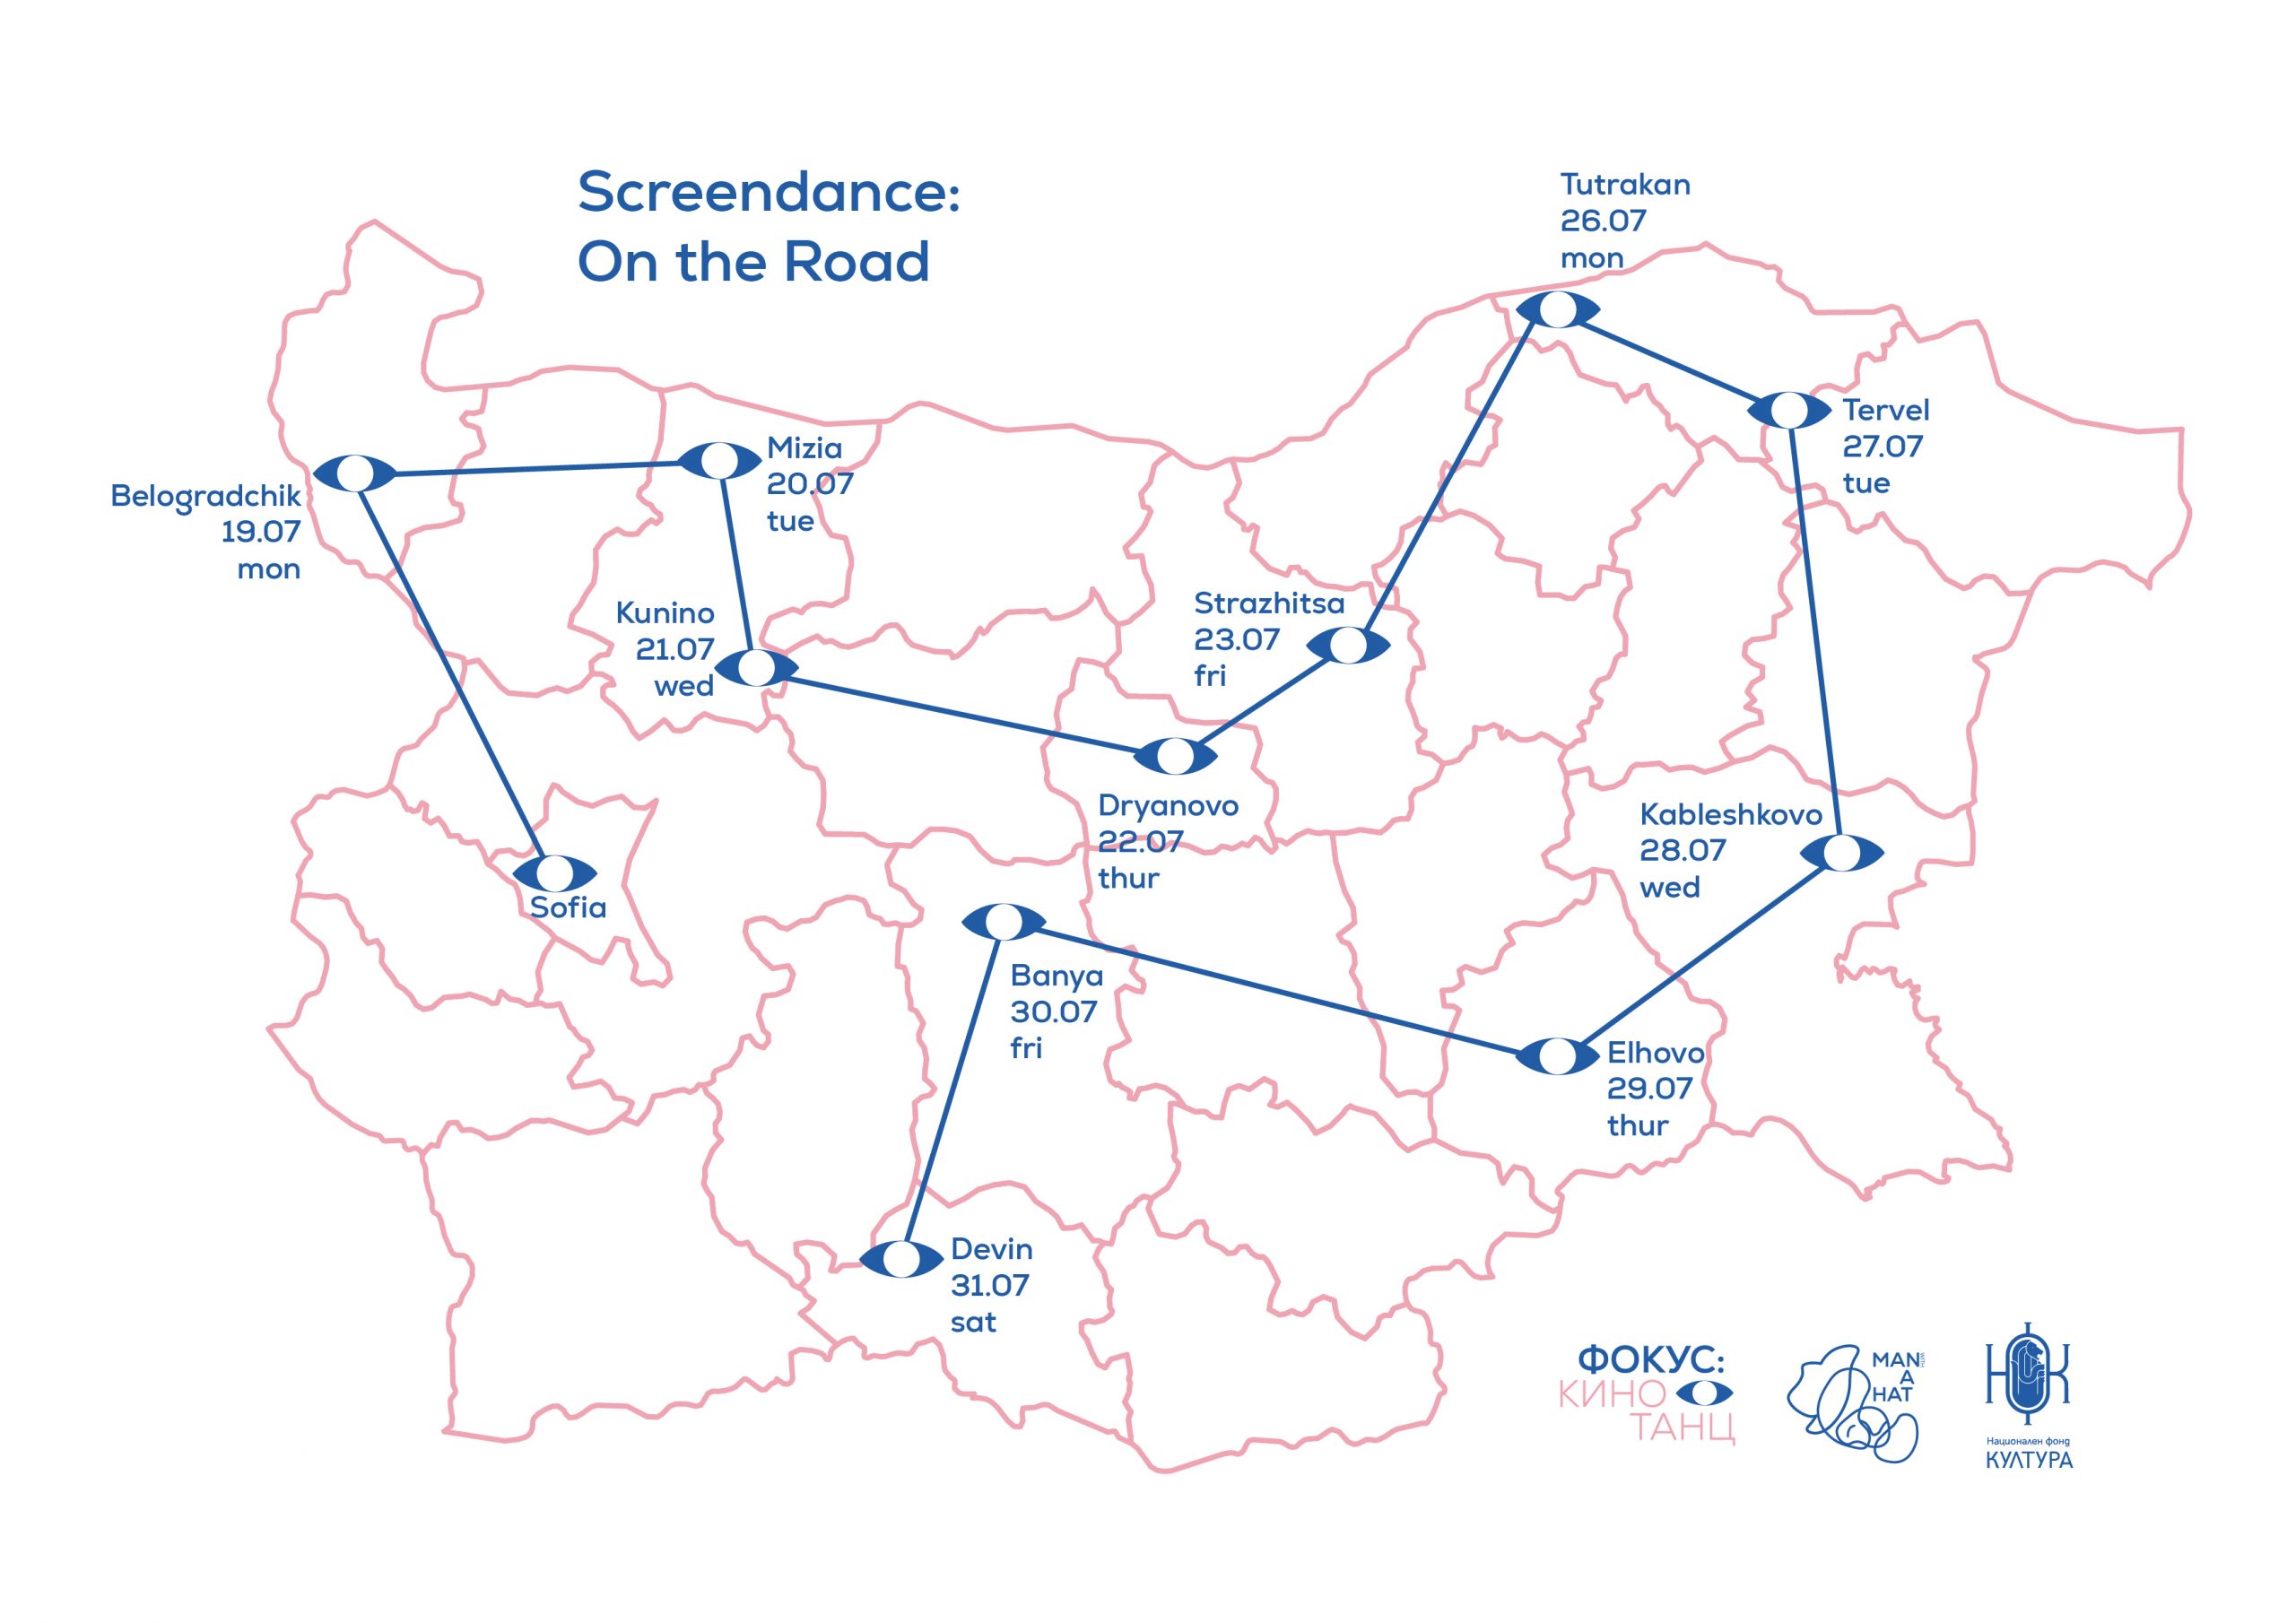 Screendance: On the Road in Bulgaria